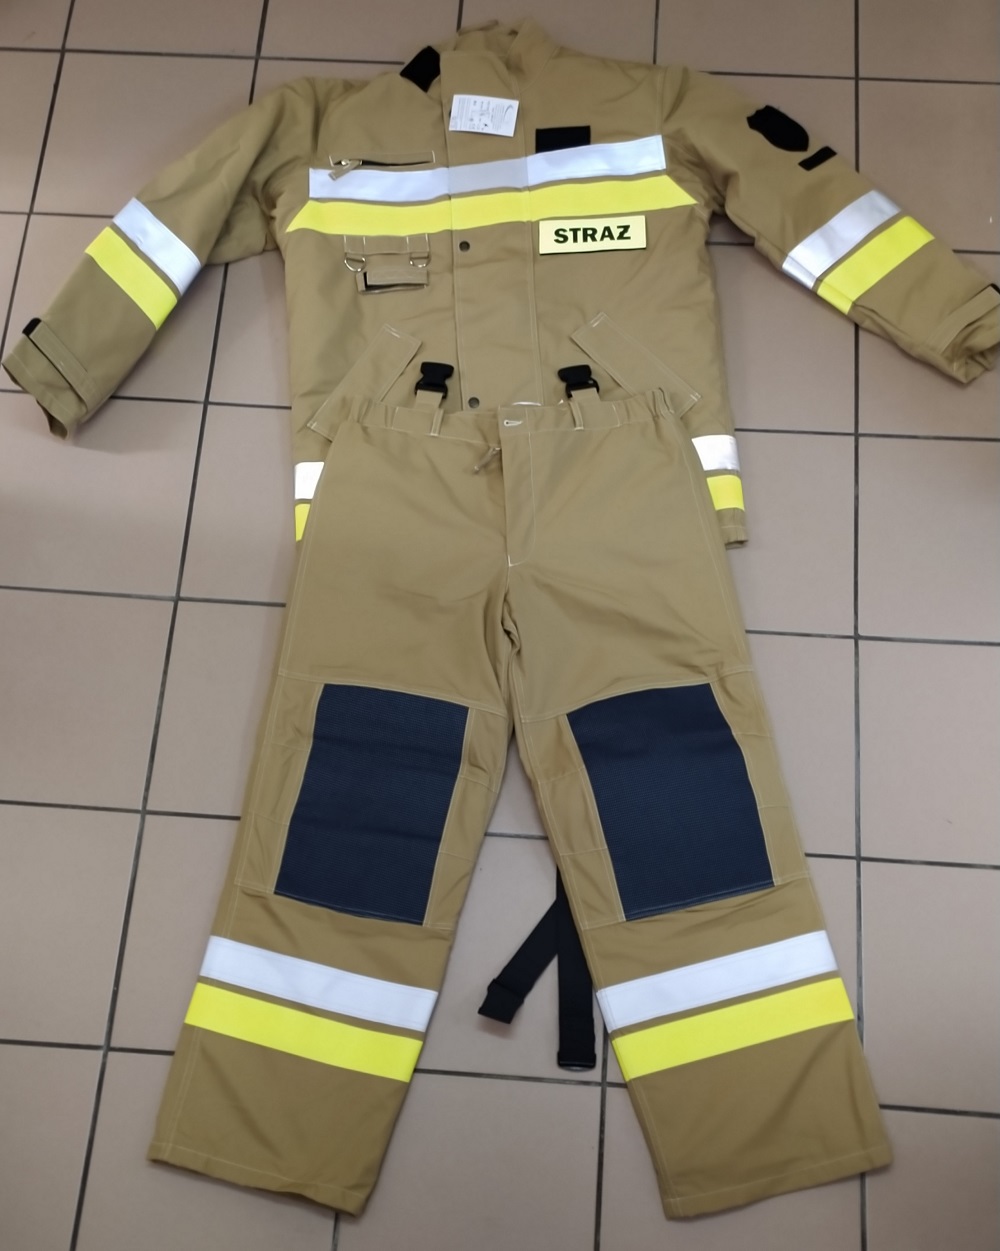 Zdjęcie przedstawia ubranie strażackie specjalne, składającego się z bluzy i spodni